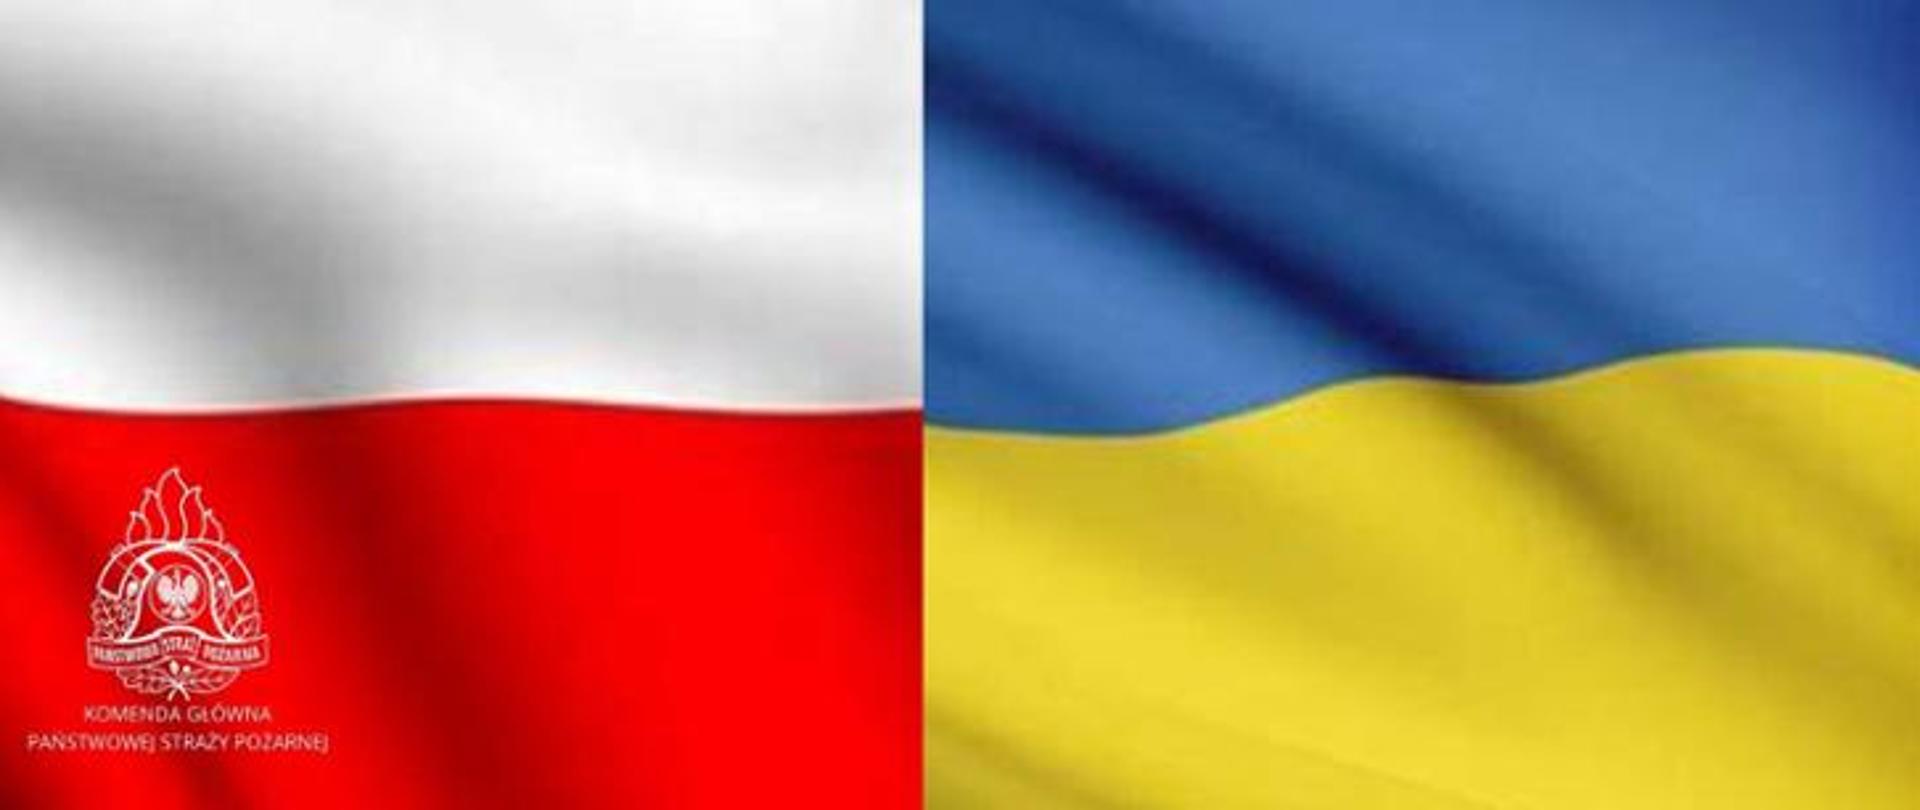 Na ilustracji znajduje się polska i ukraińska flaga na czerwonym tle logo PSP oraz napis Komenda Głowna Państwowej Straży Pożarnej